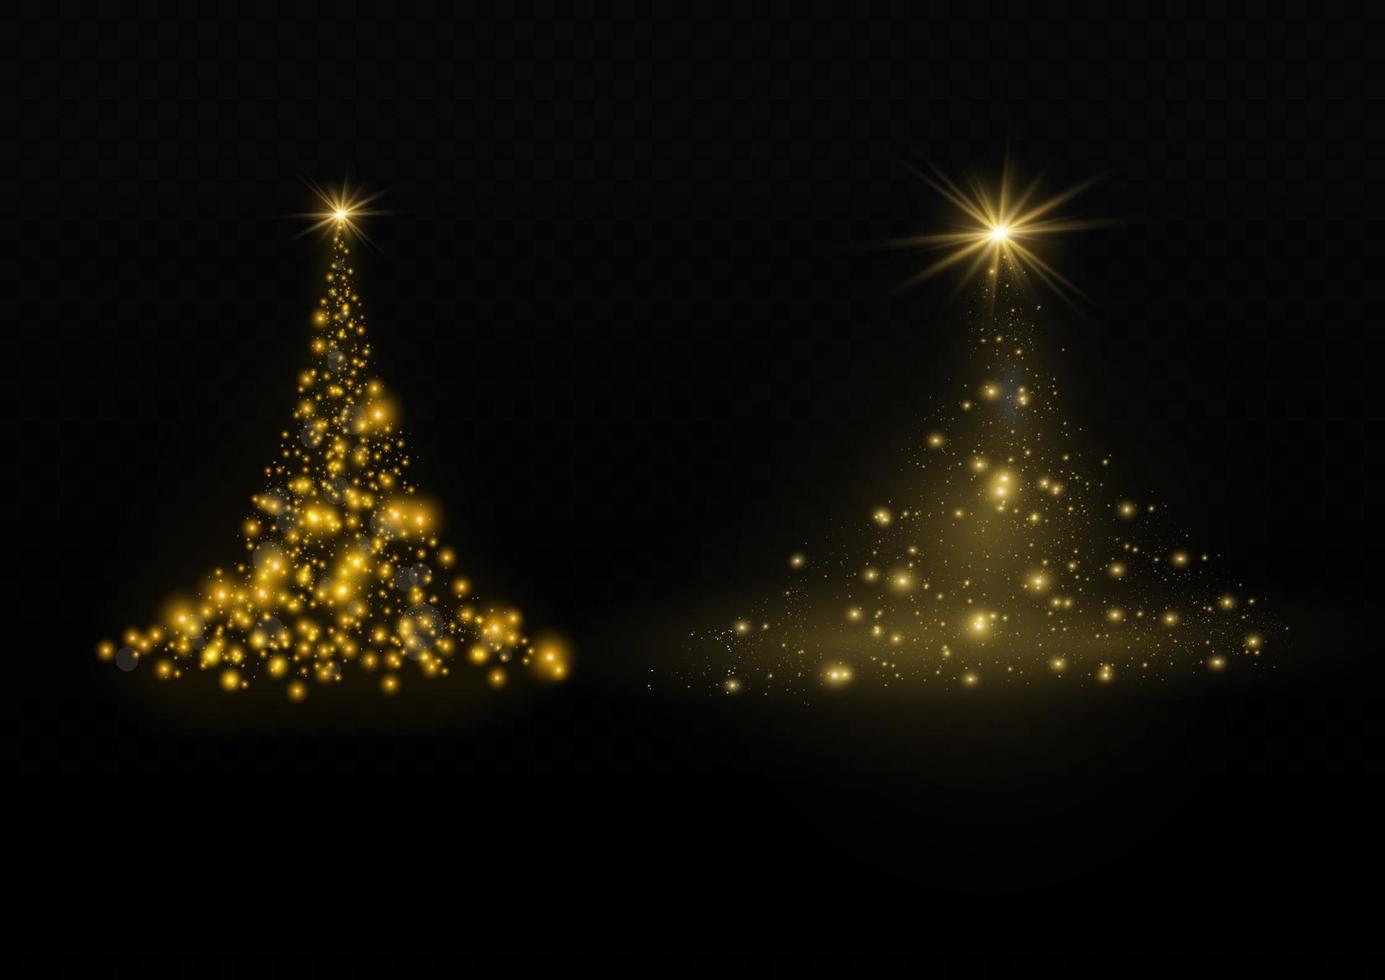 sapin de noël du vecteur de lumière. arbre de noël doré comme symbole d'une bonne année, de joyeuses vacances de noël. décoration lumineuse dorée. brillant brillant